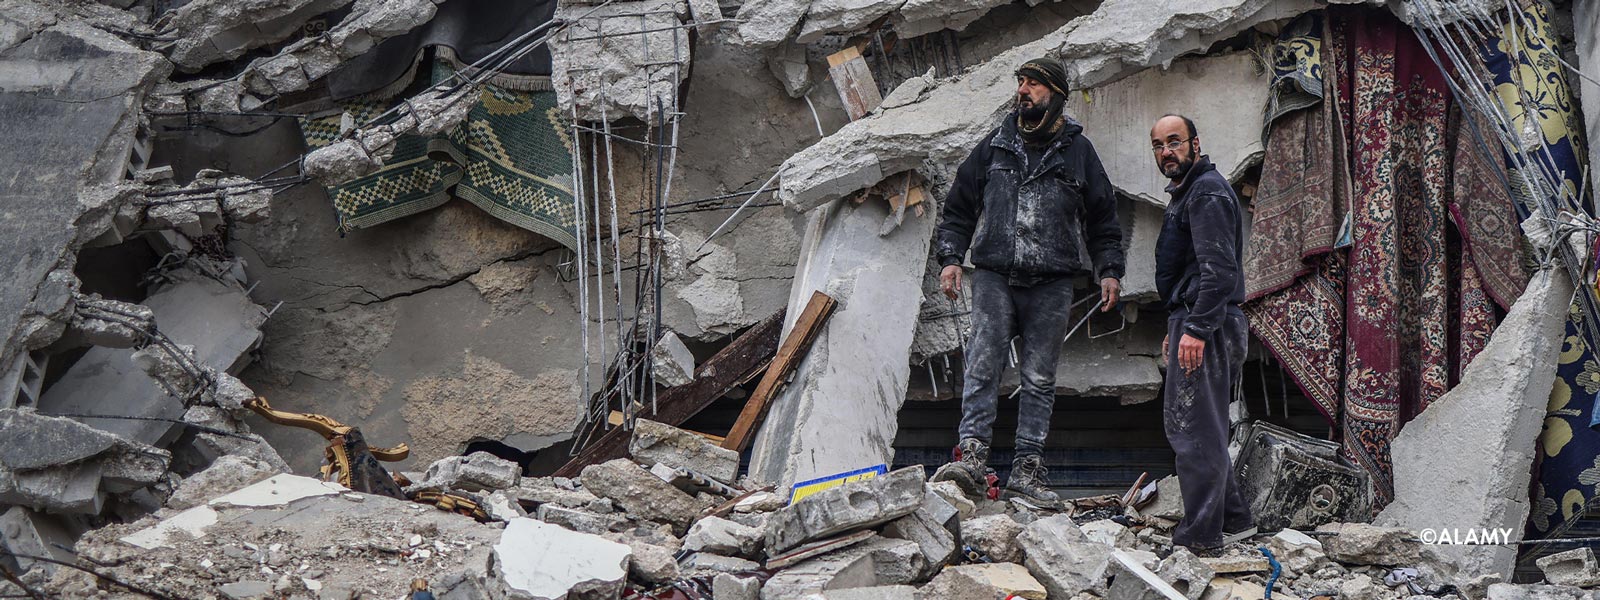 Portes ouvertes aide aux chretiens victimes seisme syrie turquie